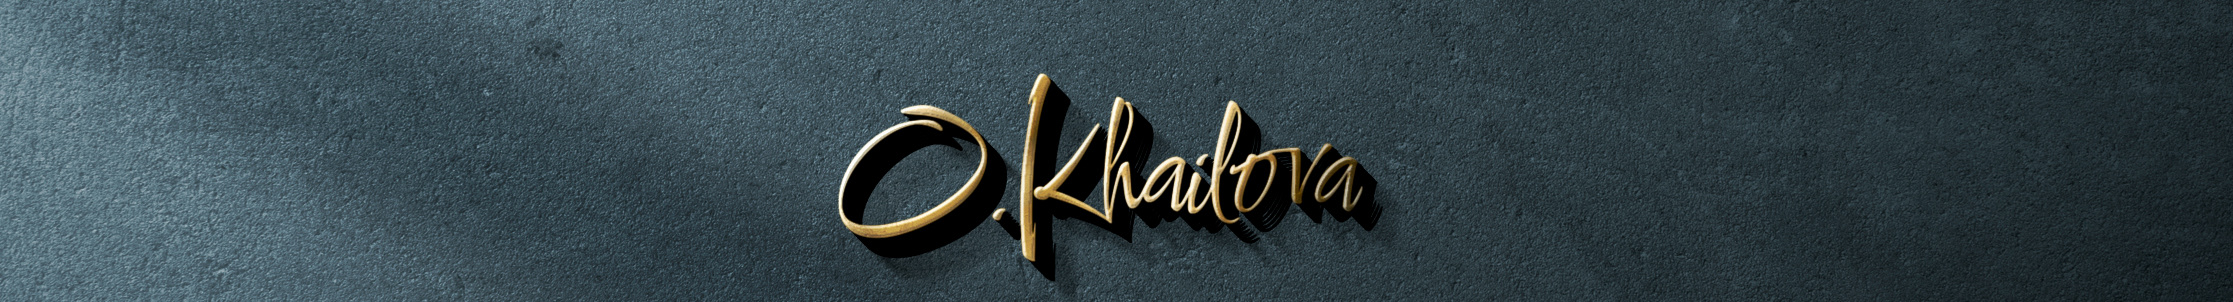 Oksana Khailova's profile banner